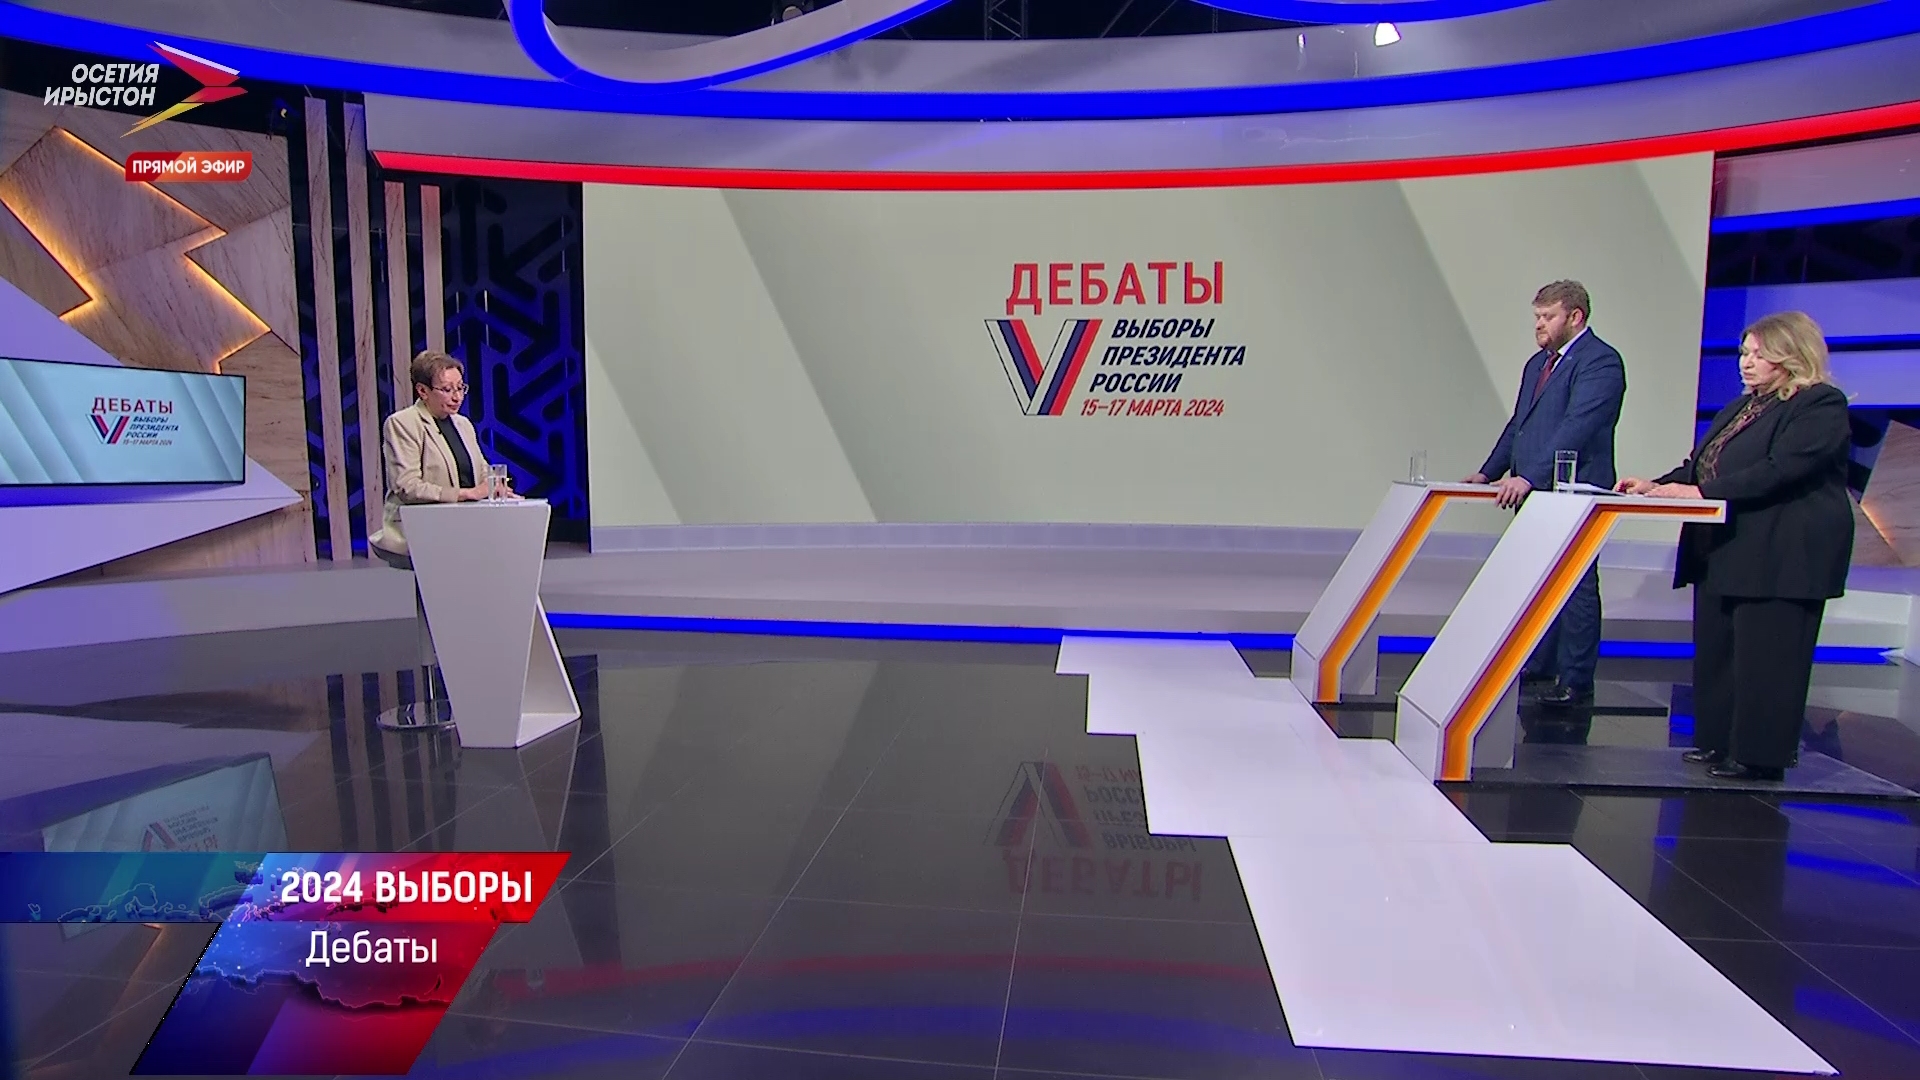 Бондаренко дебаты 2024